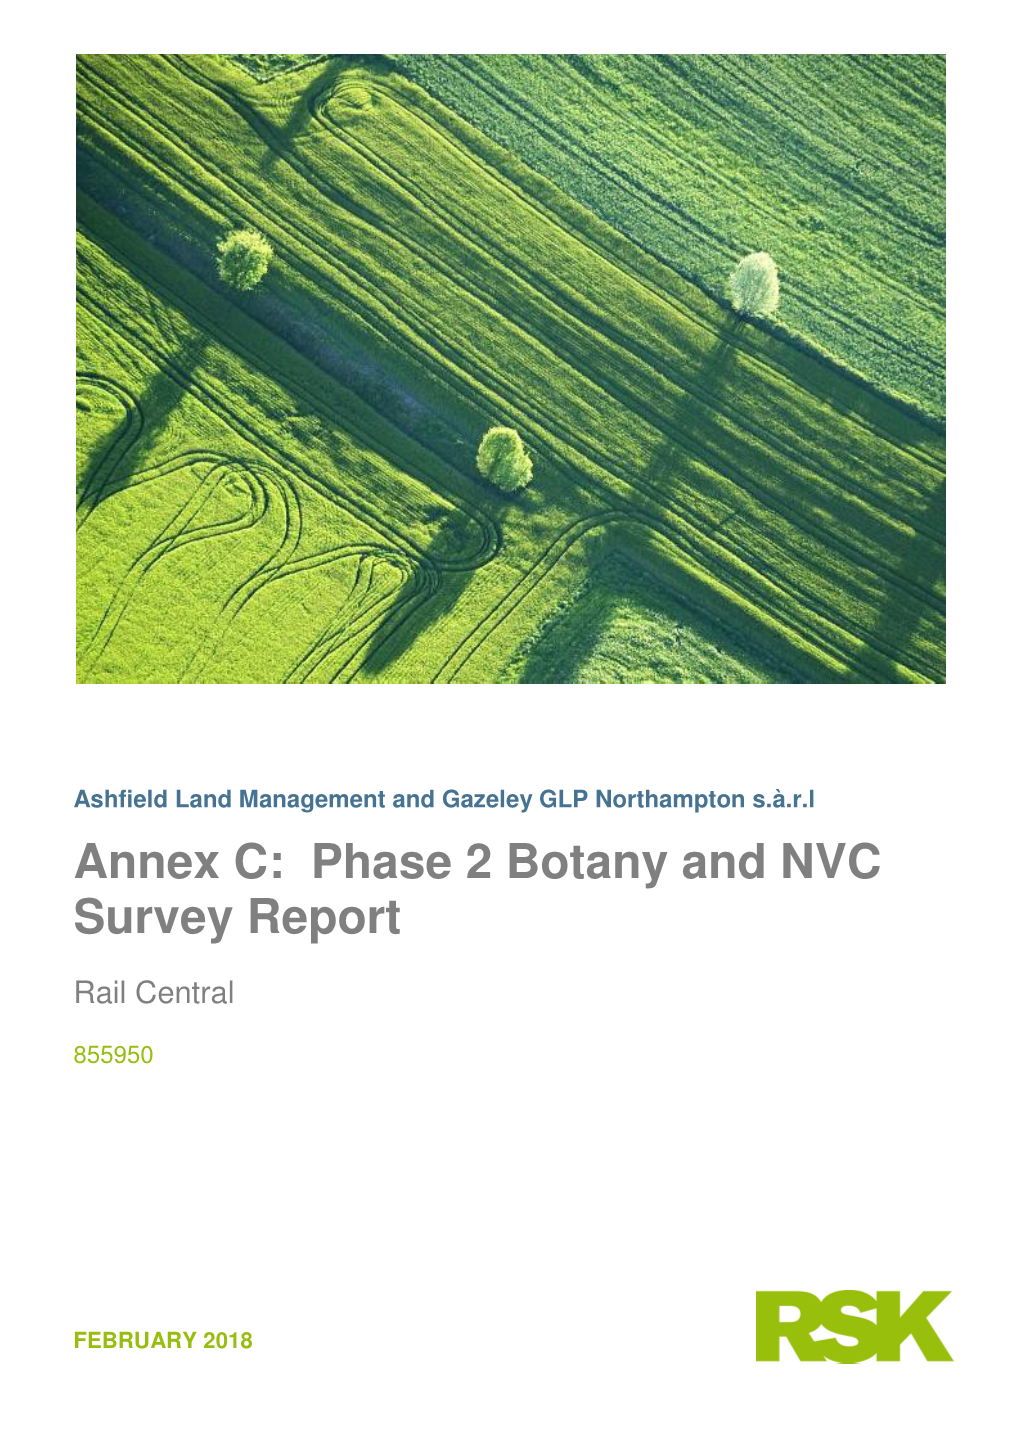 Phase 2 Botany and NVC Survey Report